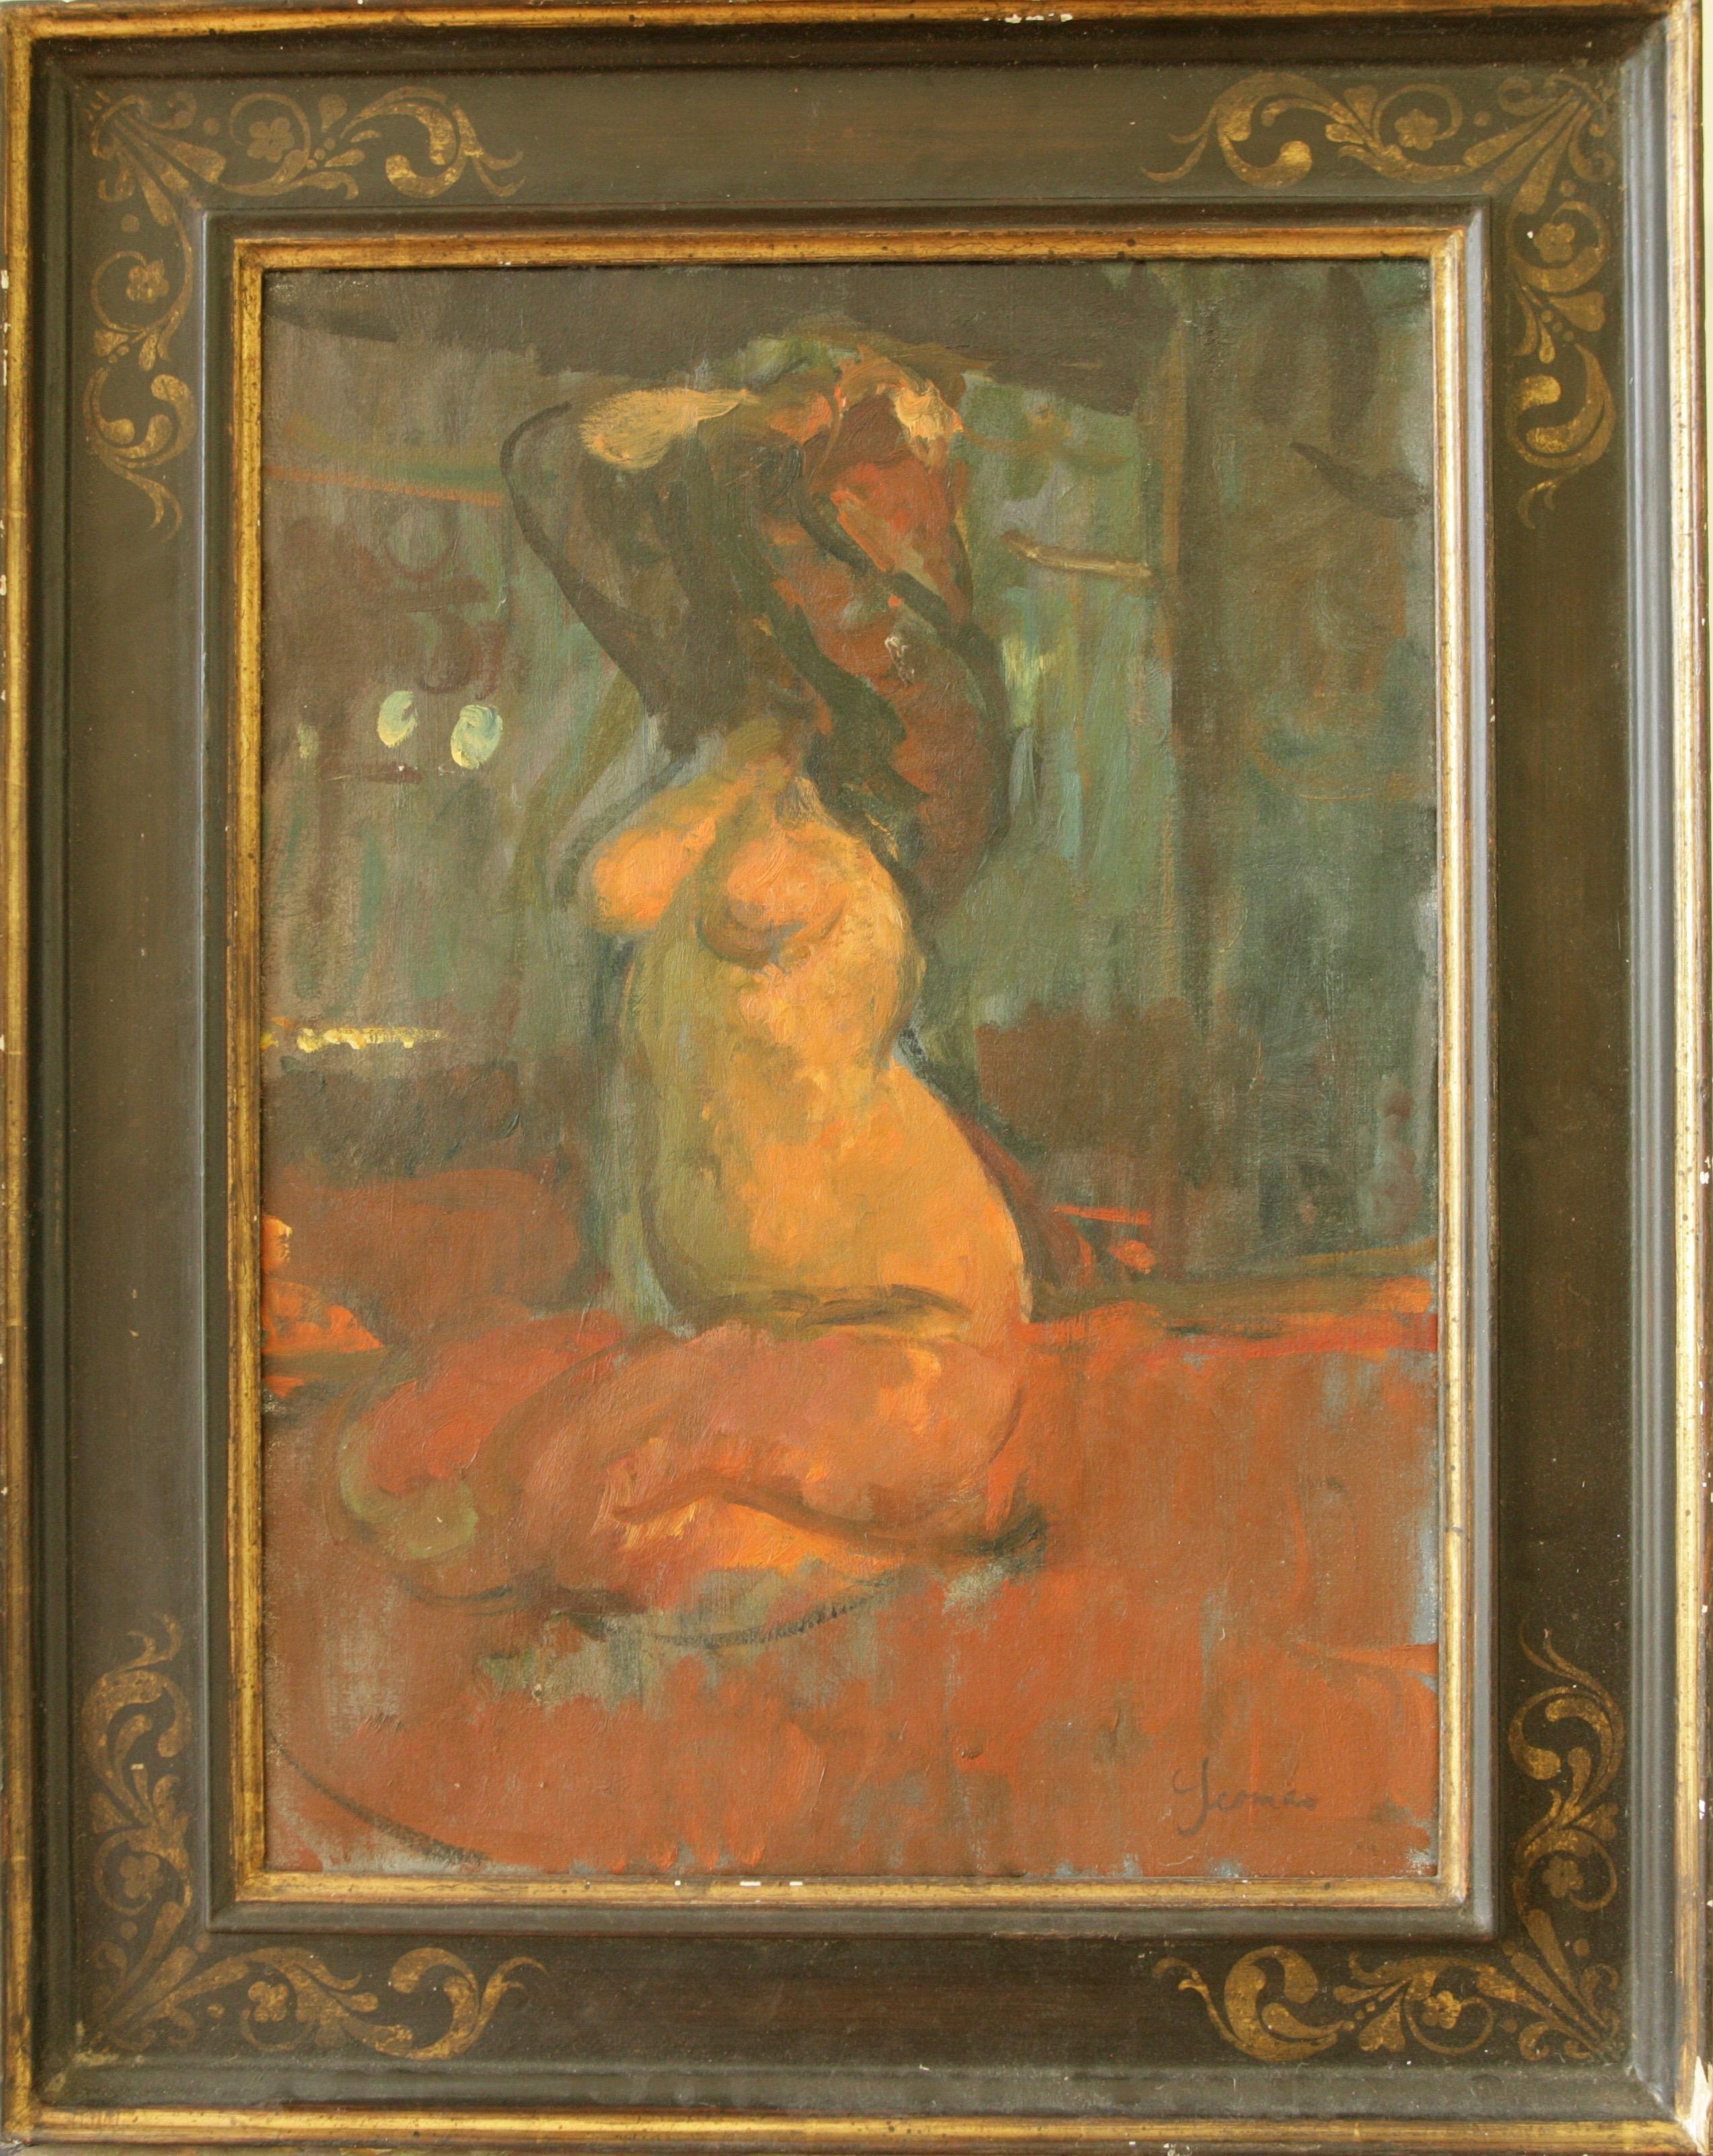 MARTIN YEOMAN Tänzerin, Frau, unbekleidet, nackt, Ölgemälde, postimpressionistische Malerei